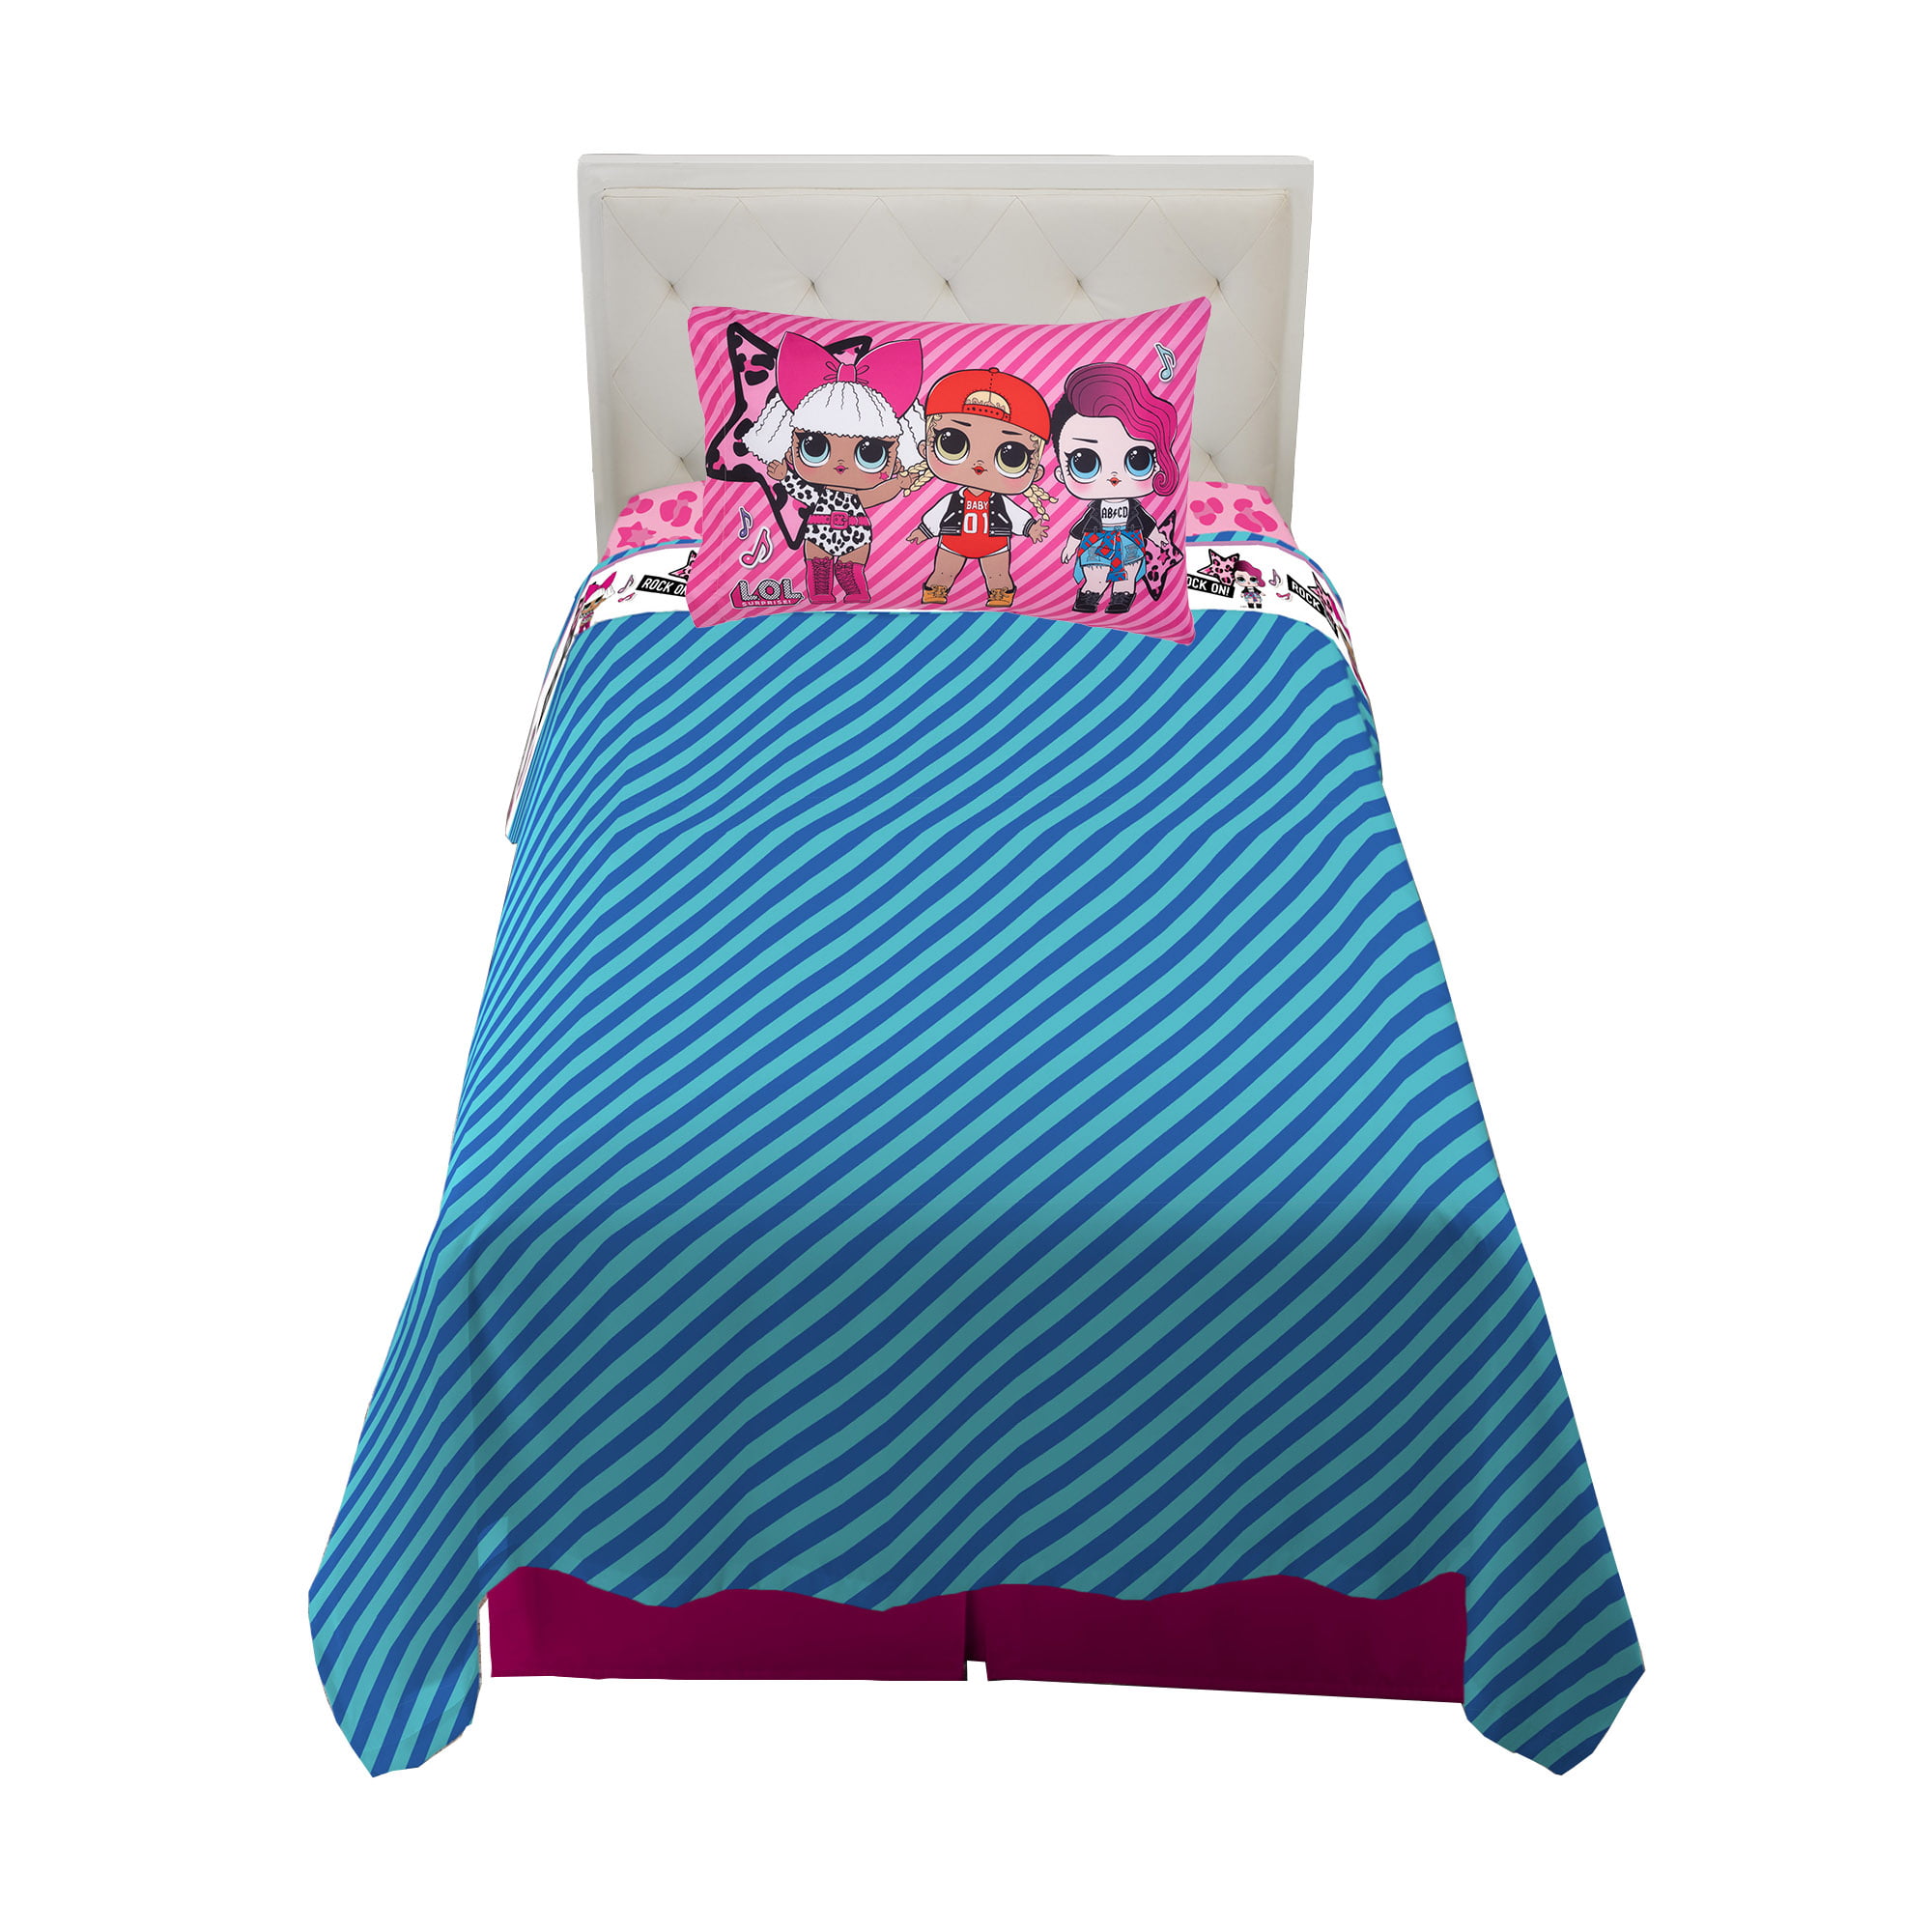 L.O.L SURPRISE 3 Piece Microfiber Twin Bedding Sheet Set & Pillowcase LOL NEW 